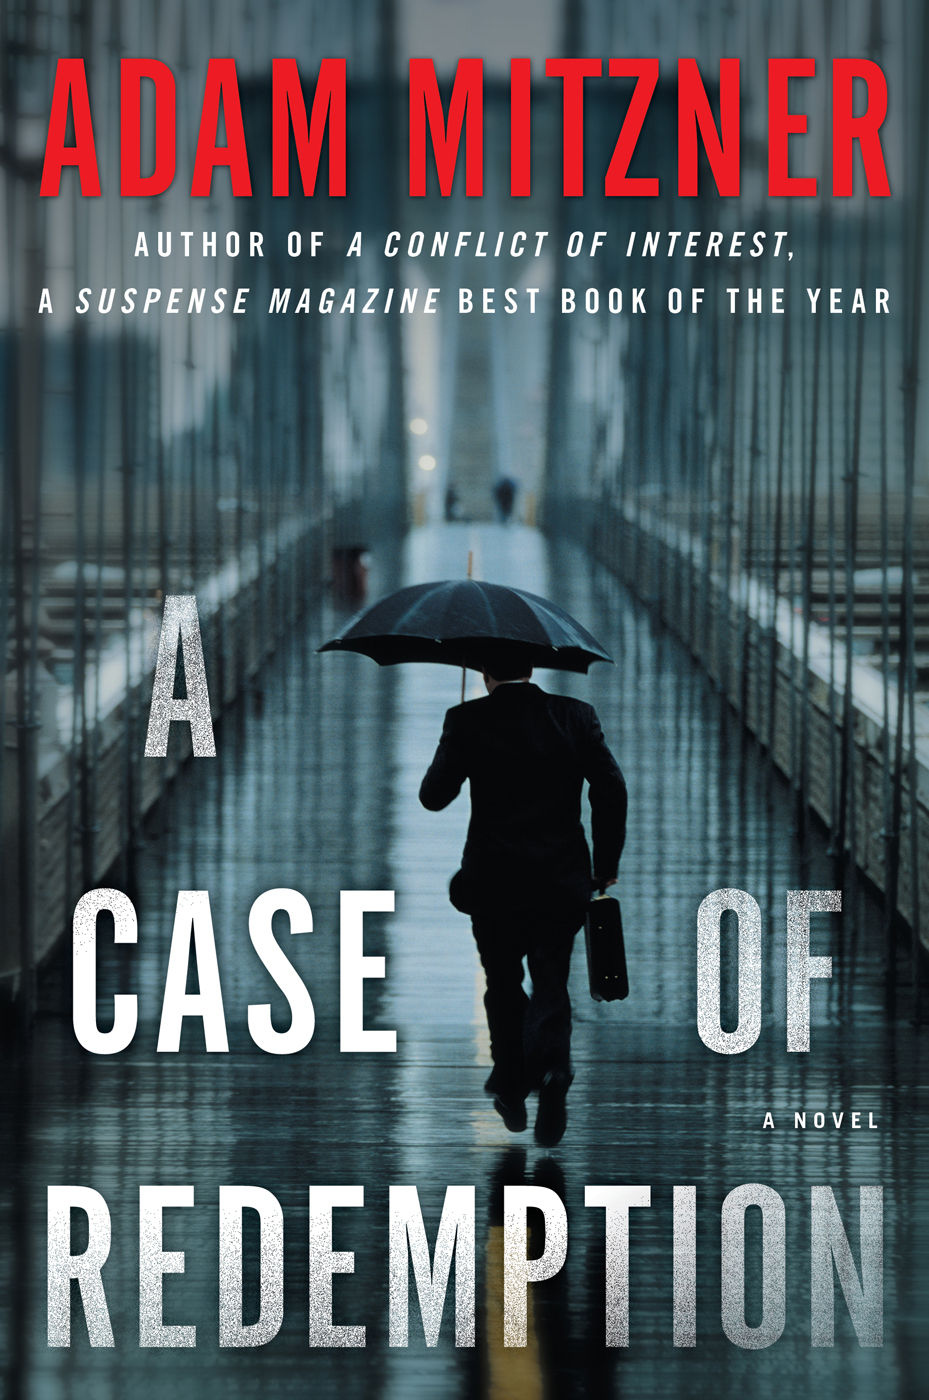 A Case of Redemption by Adam Mitzner